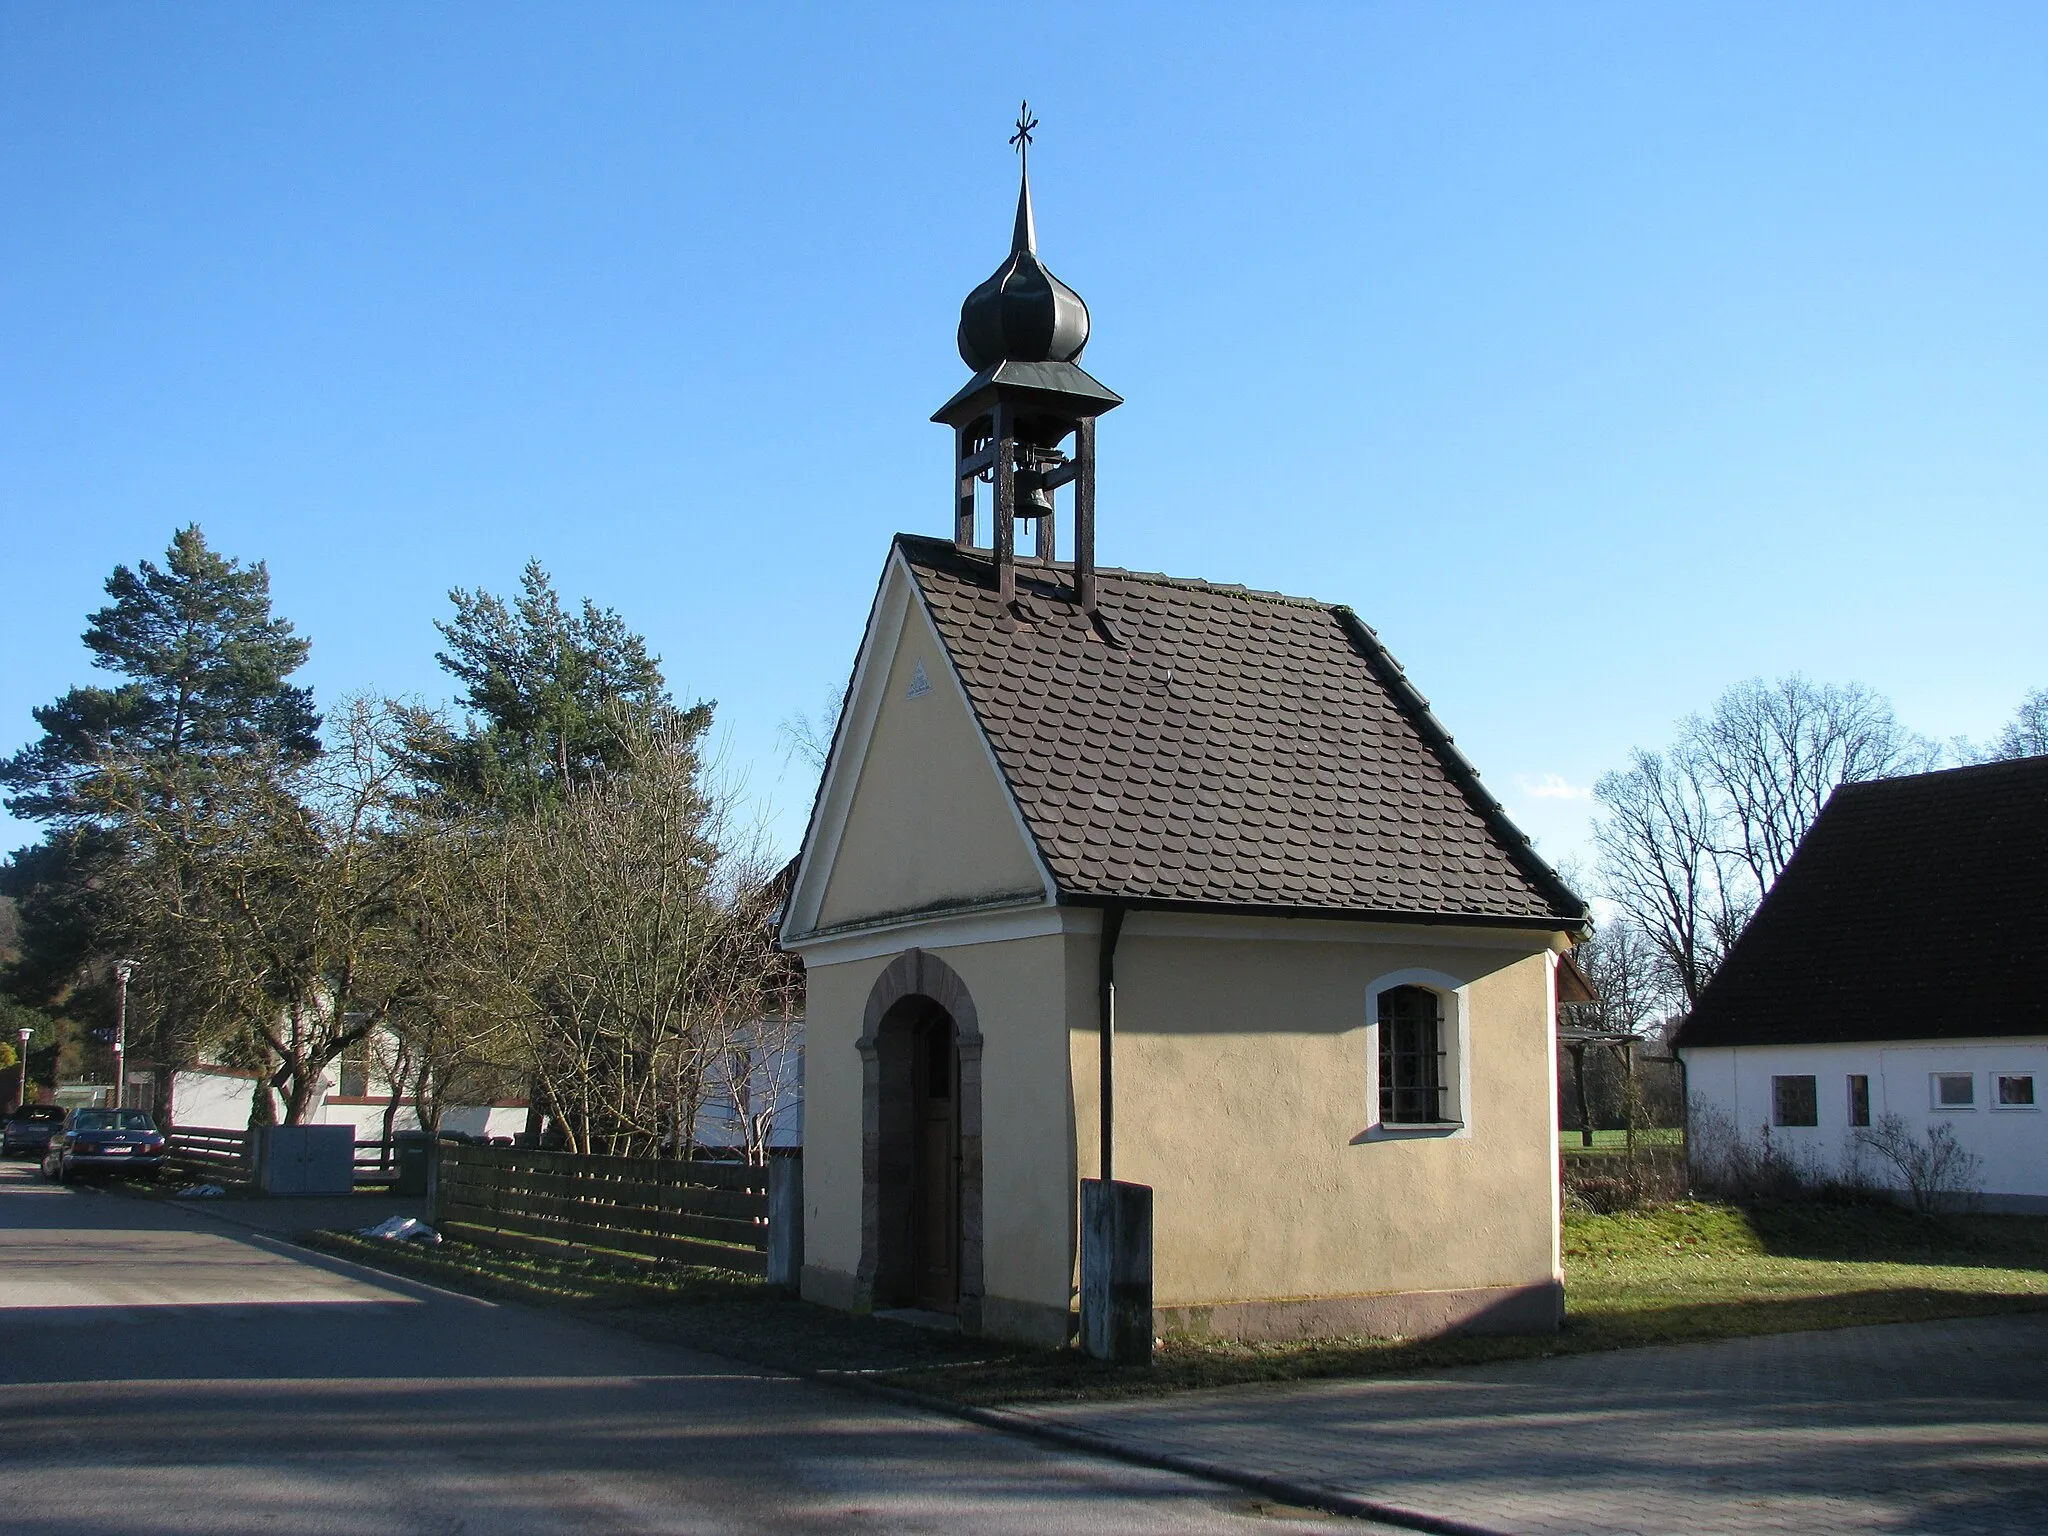 Photo showing: Altenhofen, Ortsteil von Hilpoltstein im mittelfränkischen Landkreis Roth, Katholische Ortskapelle